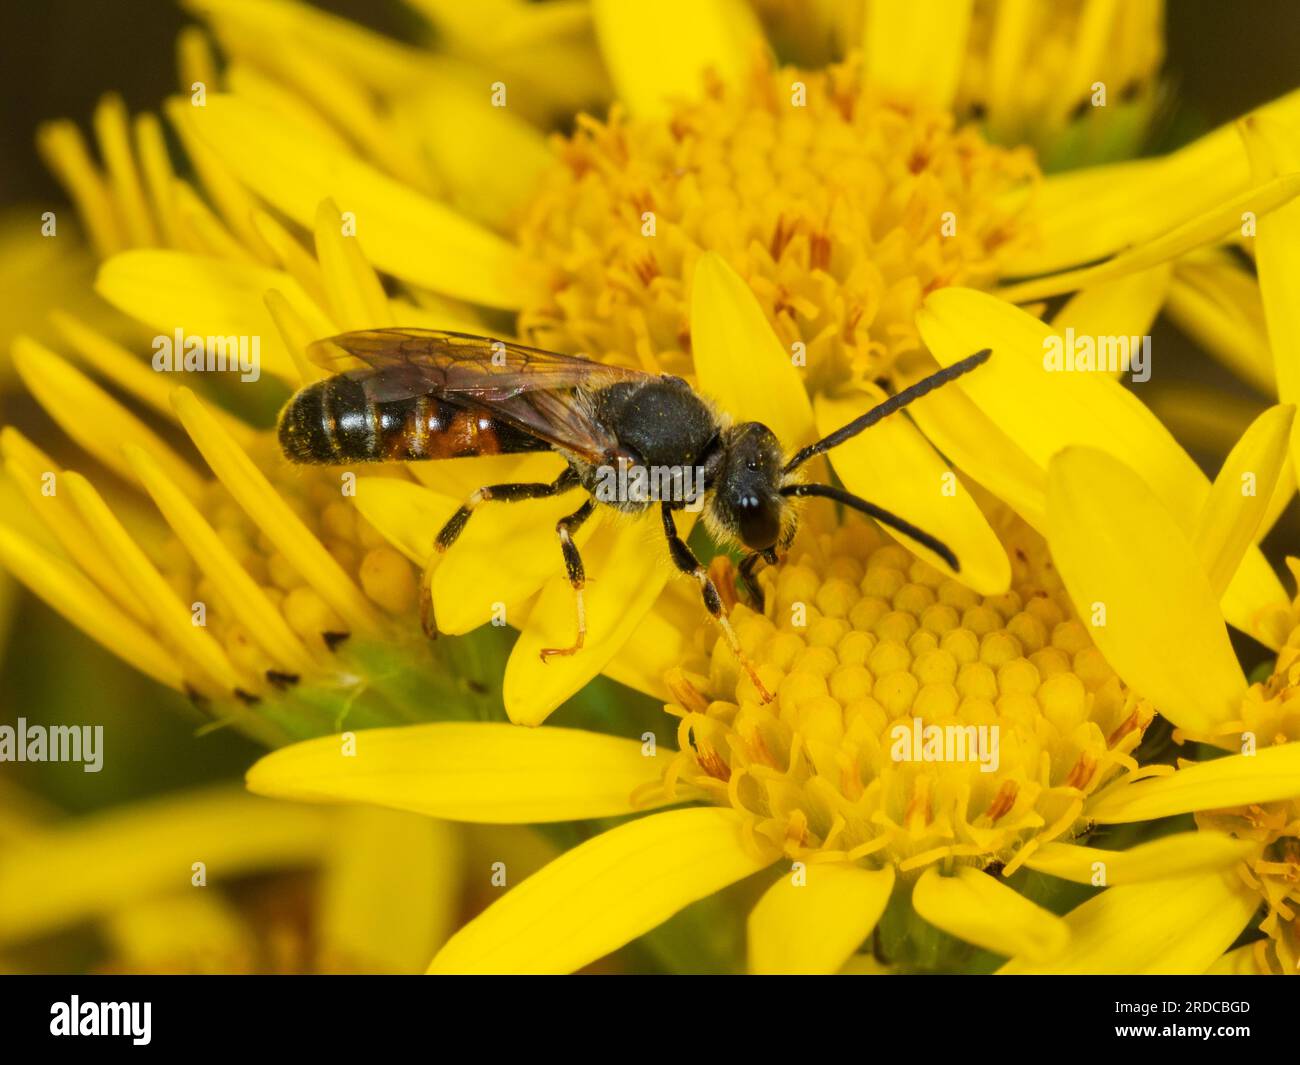 Männliche Schweissbiene, Lasioglossum calceatum, die sich von den gelben Blüten des gewöhnlichen Ragwurzes, Senecio jacobaea, ernährt Stockfoto